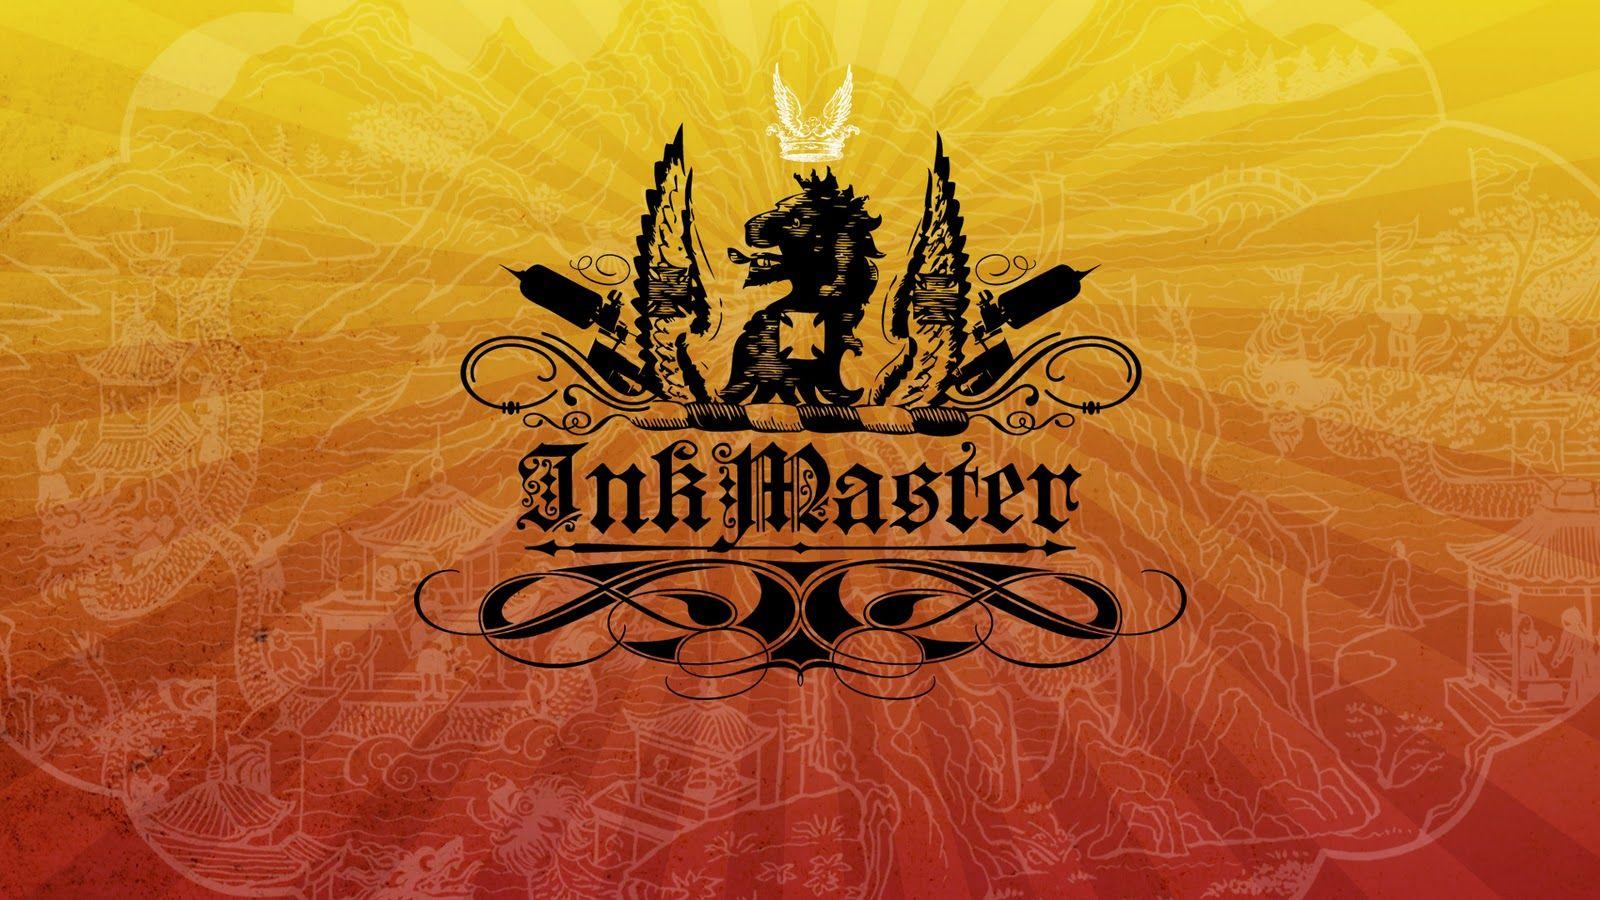 Ink Master Logo - Inkmaster :: Style Frames | Lin Wilde Design